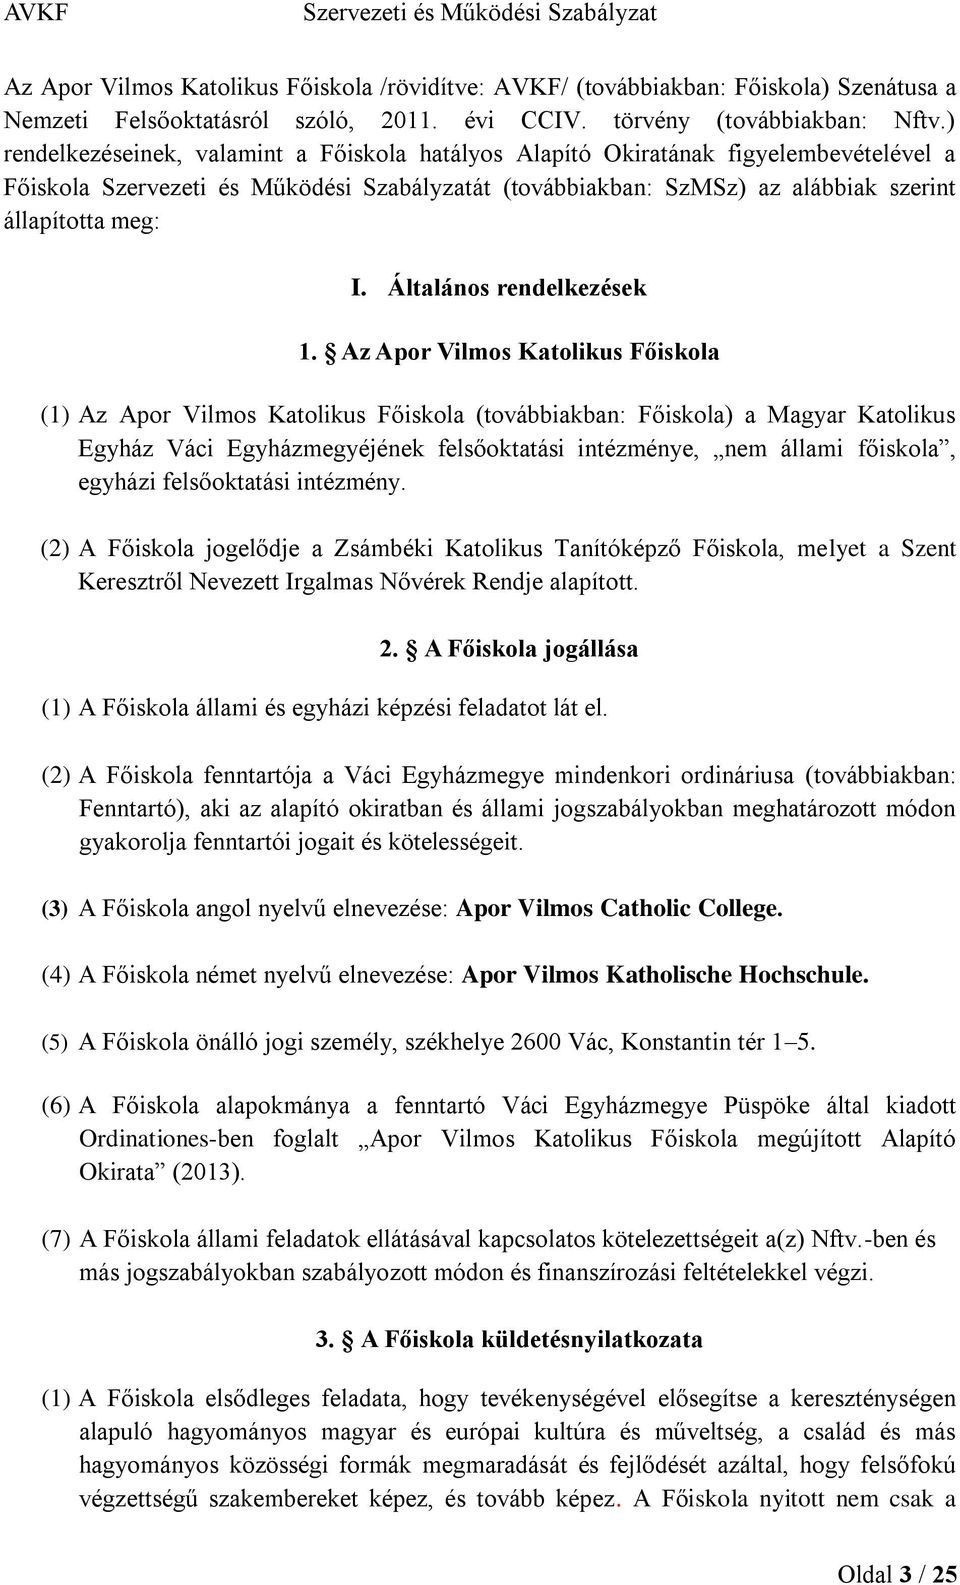 Az Apor Vilmos Katolikus Főiskola (1) Az Apor Vilmos Katolikus Főiskola (továbbiakban: Főiskola) a Magyar Katolikus Egyház Váci Egyházmegyéjének felsőoktatási intézménye, nem állami főiskola, egyházi